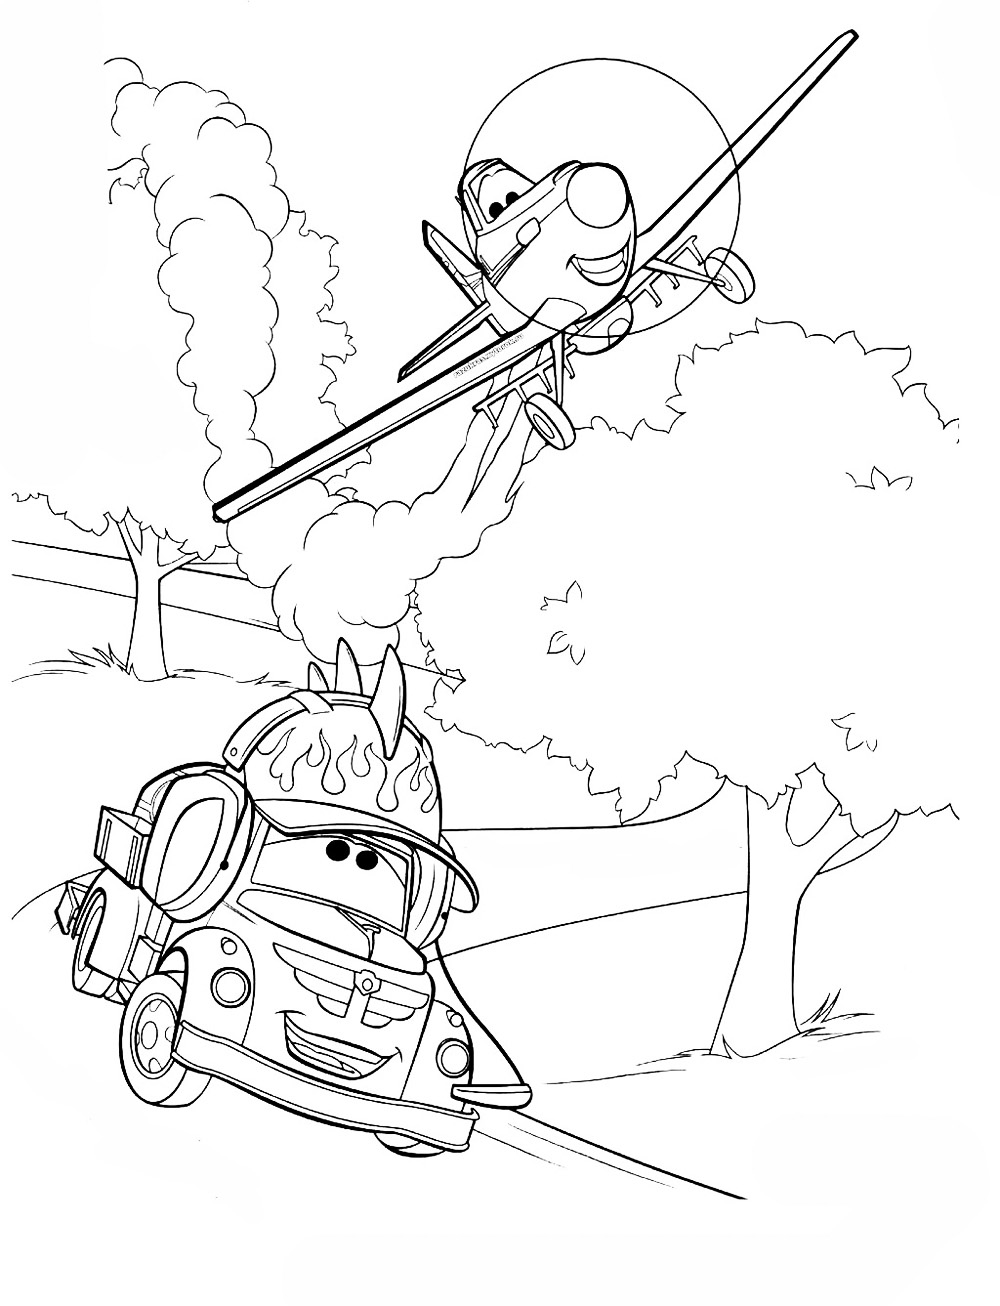 Раскраски по мультфильму Самолеты от Дисней  Самолеты дисней, самолет разговаривает с тачкой, дорога, деревья